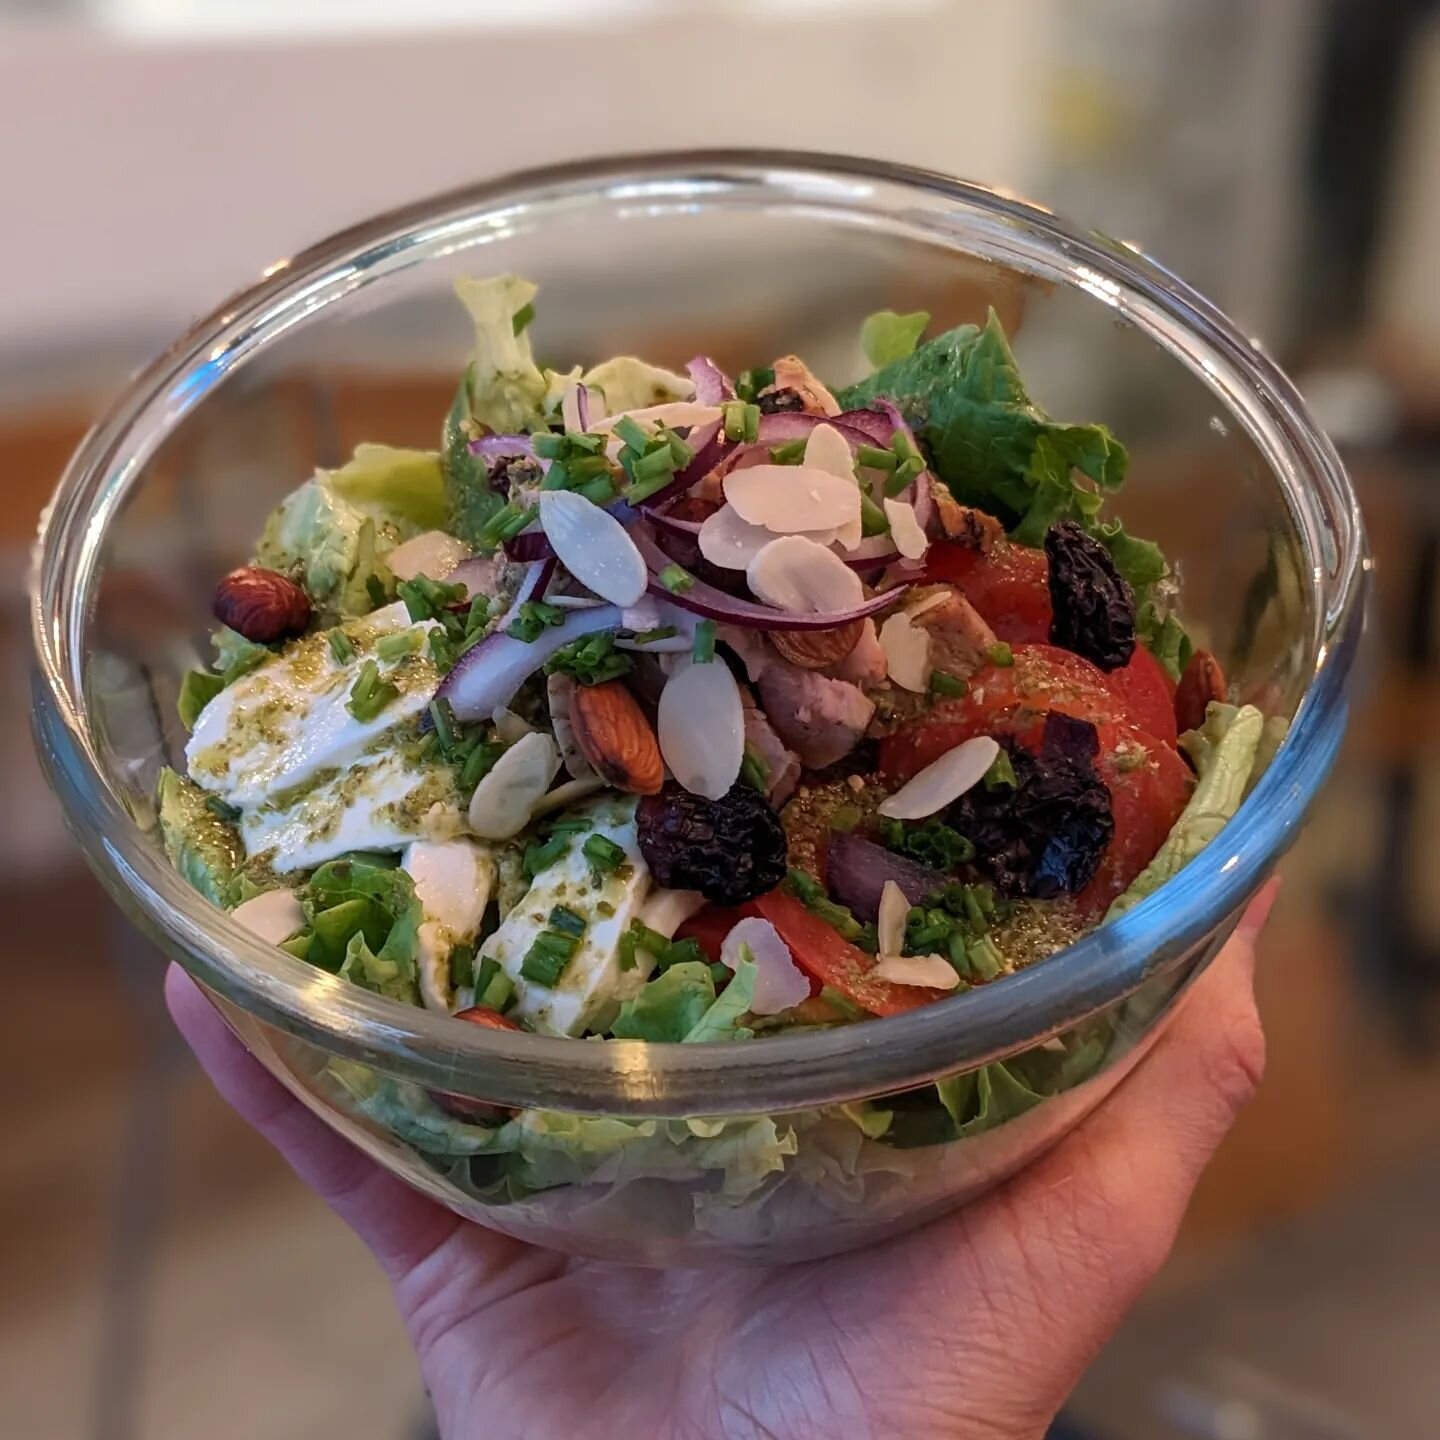 NOUVEAUTE:
D&eacute;couvrez nos maxi salade bowl!
Plein d'ingr&eacute;diens tr&egrave;s sympa pour une salade copieuse et g&eacute;n&eacute;reuse.
Choisissez votre prot&eacute;ine.

Sur place ou &agrave; emporter 👍